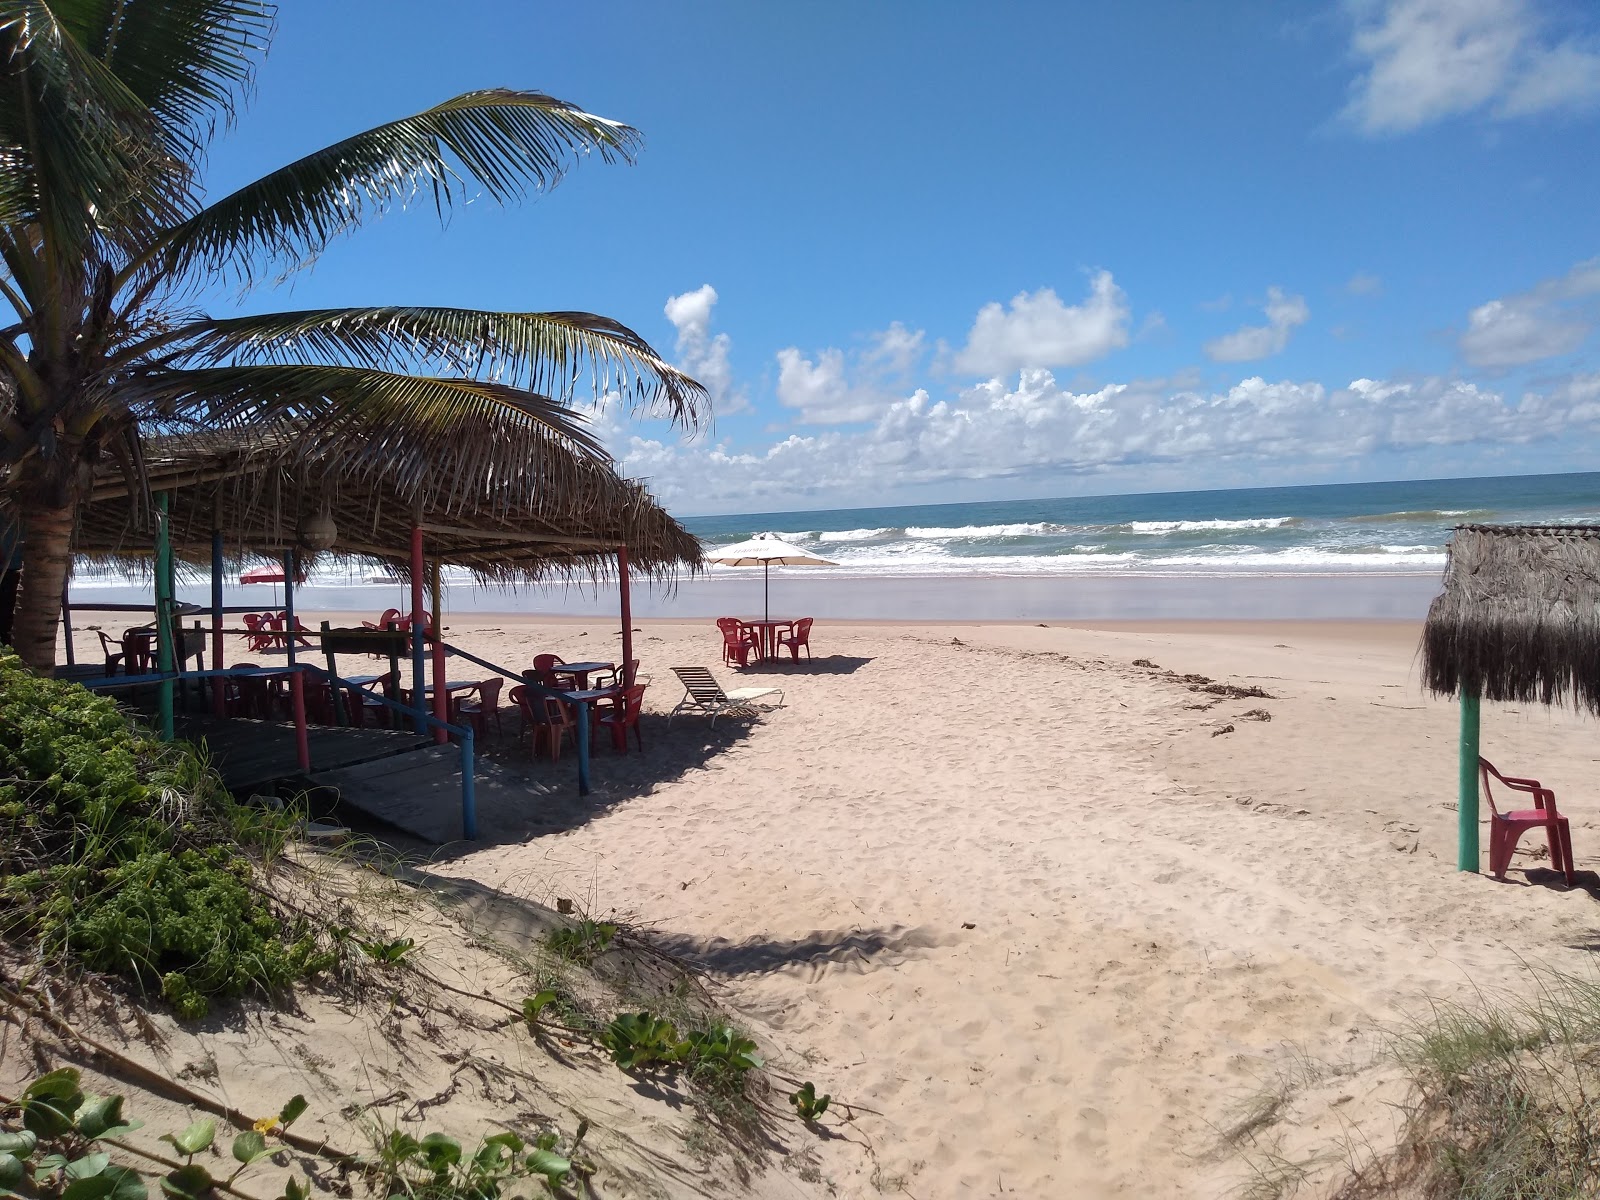 Foto af Praia de Massarandupio - populært sted blandt afslapningskendere